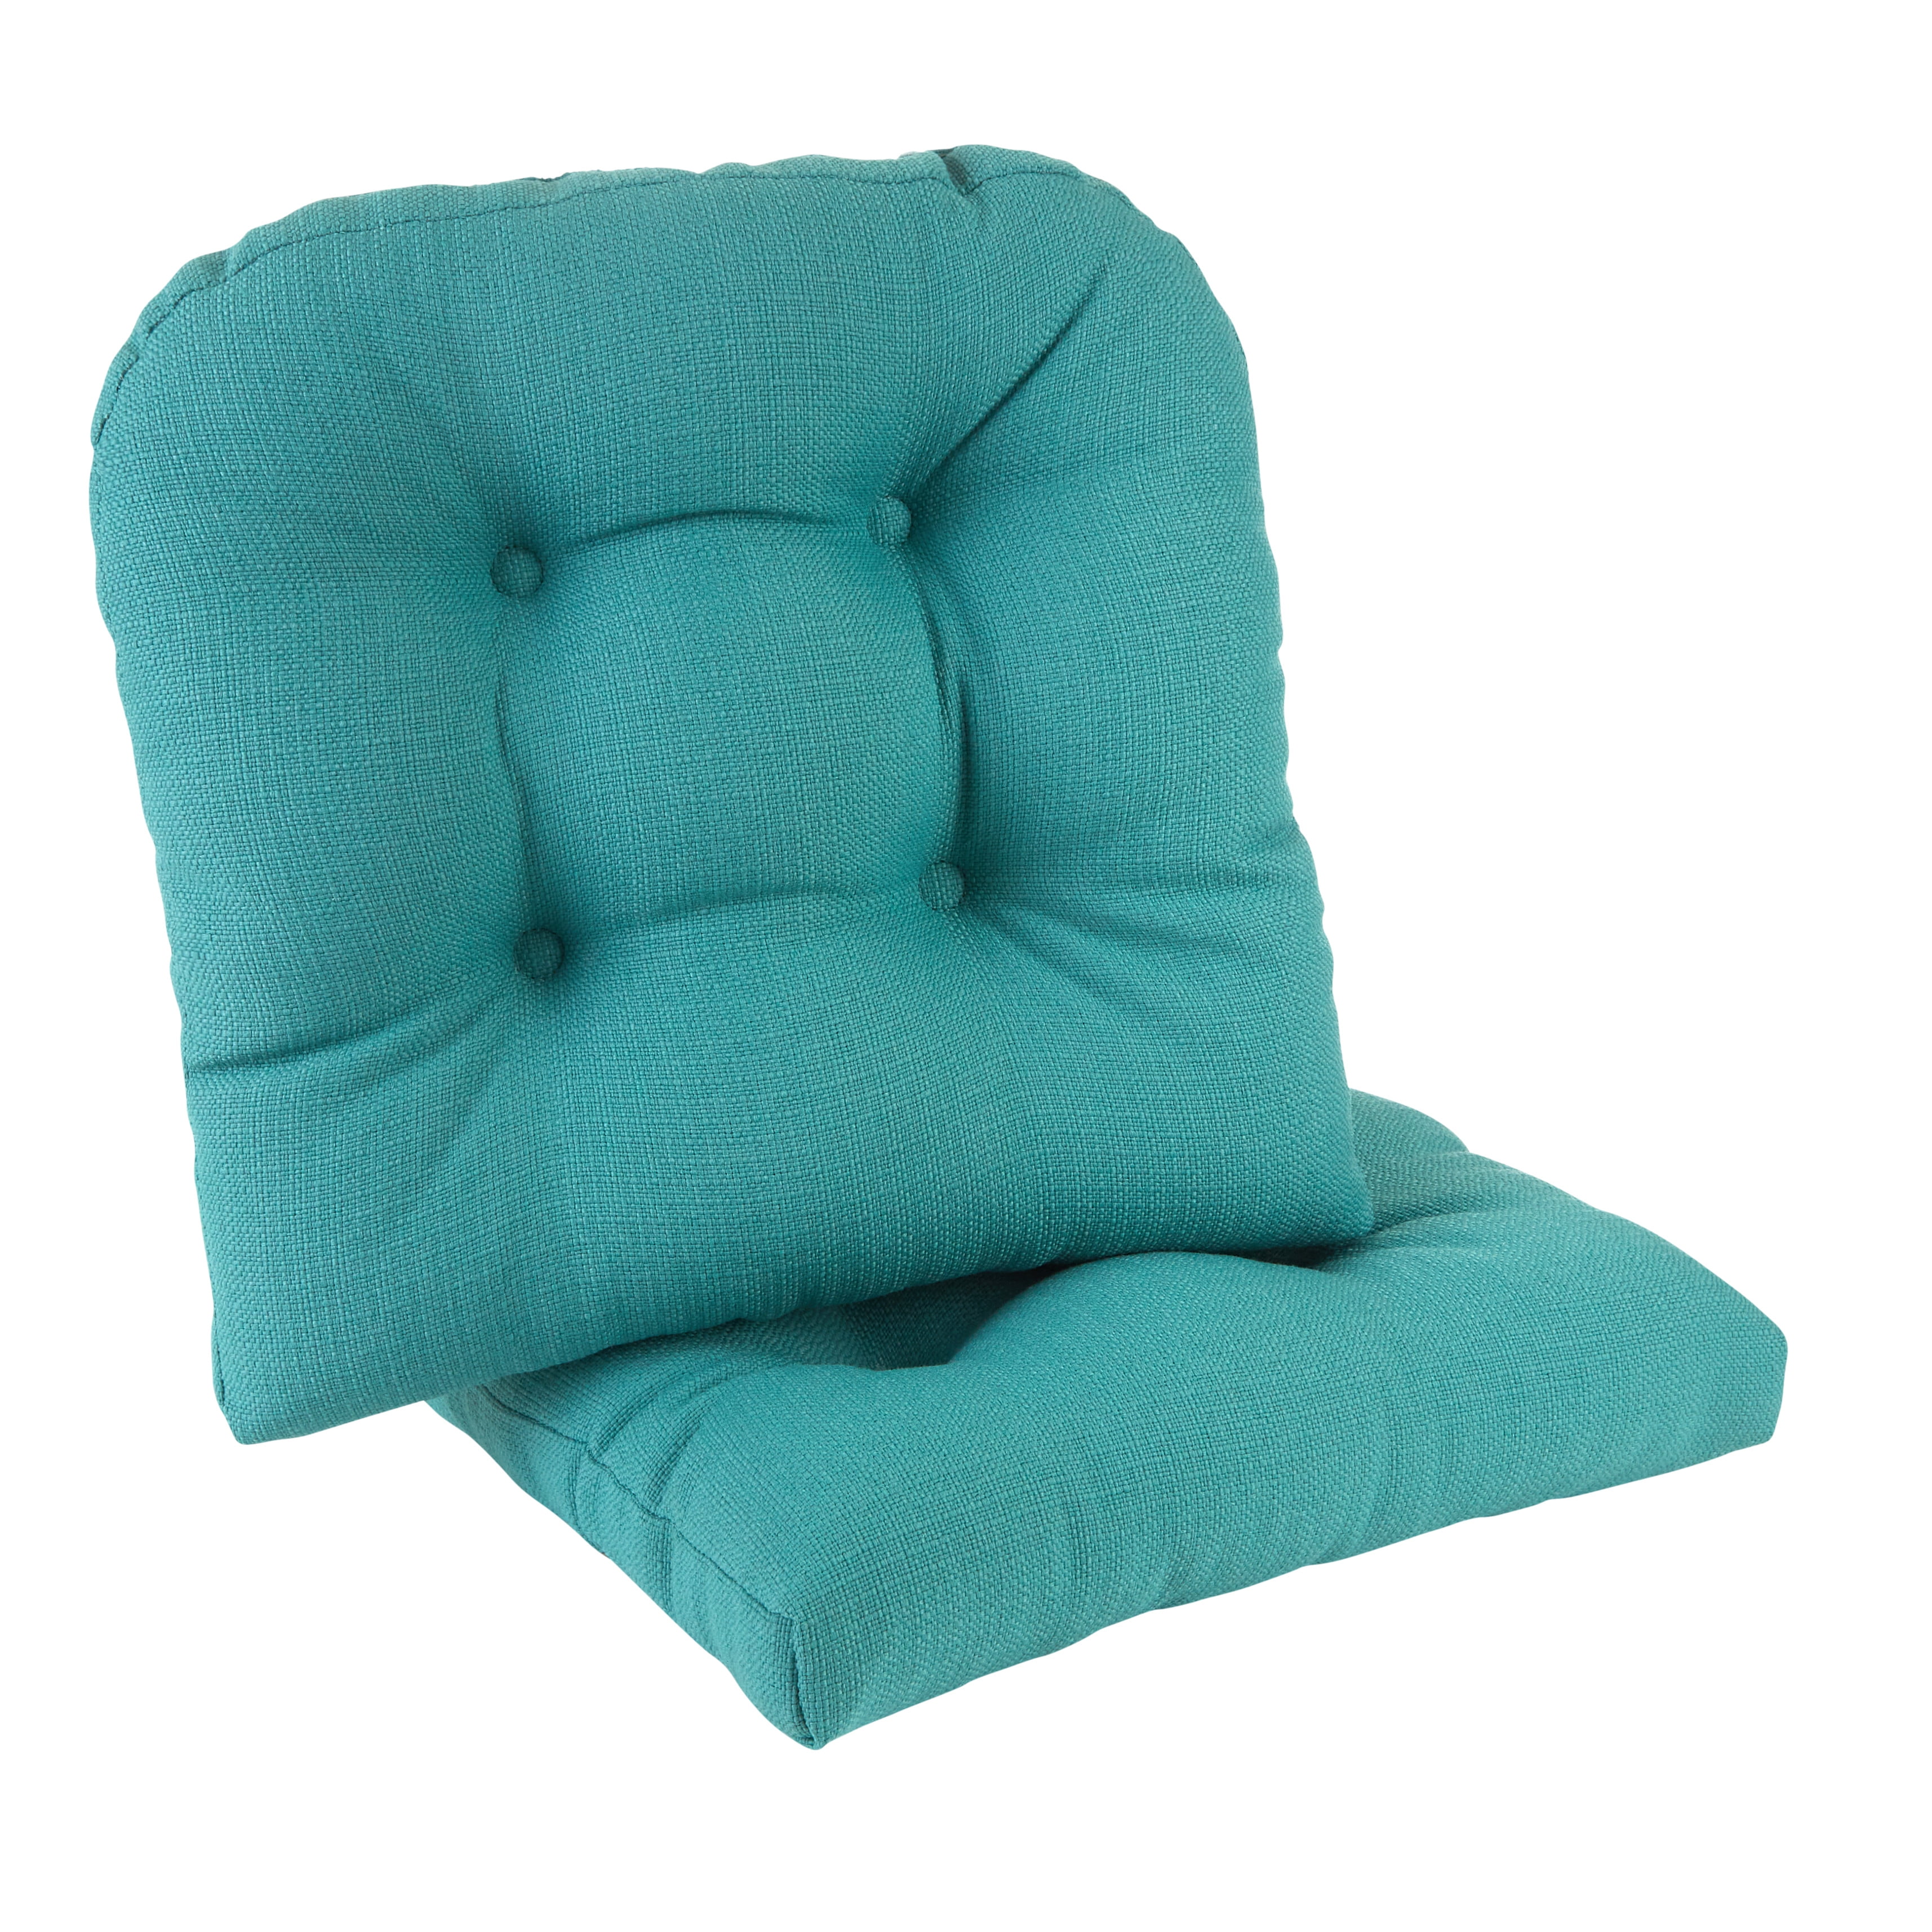 Gripper 15 X 15 Non-slip Chance Tufted Memory Foam Chair